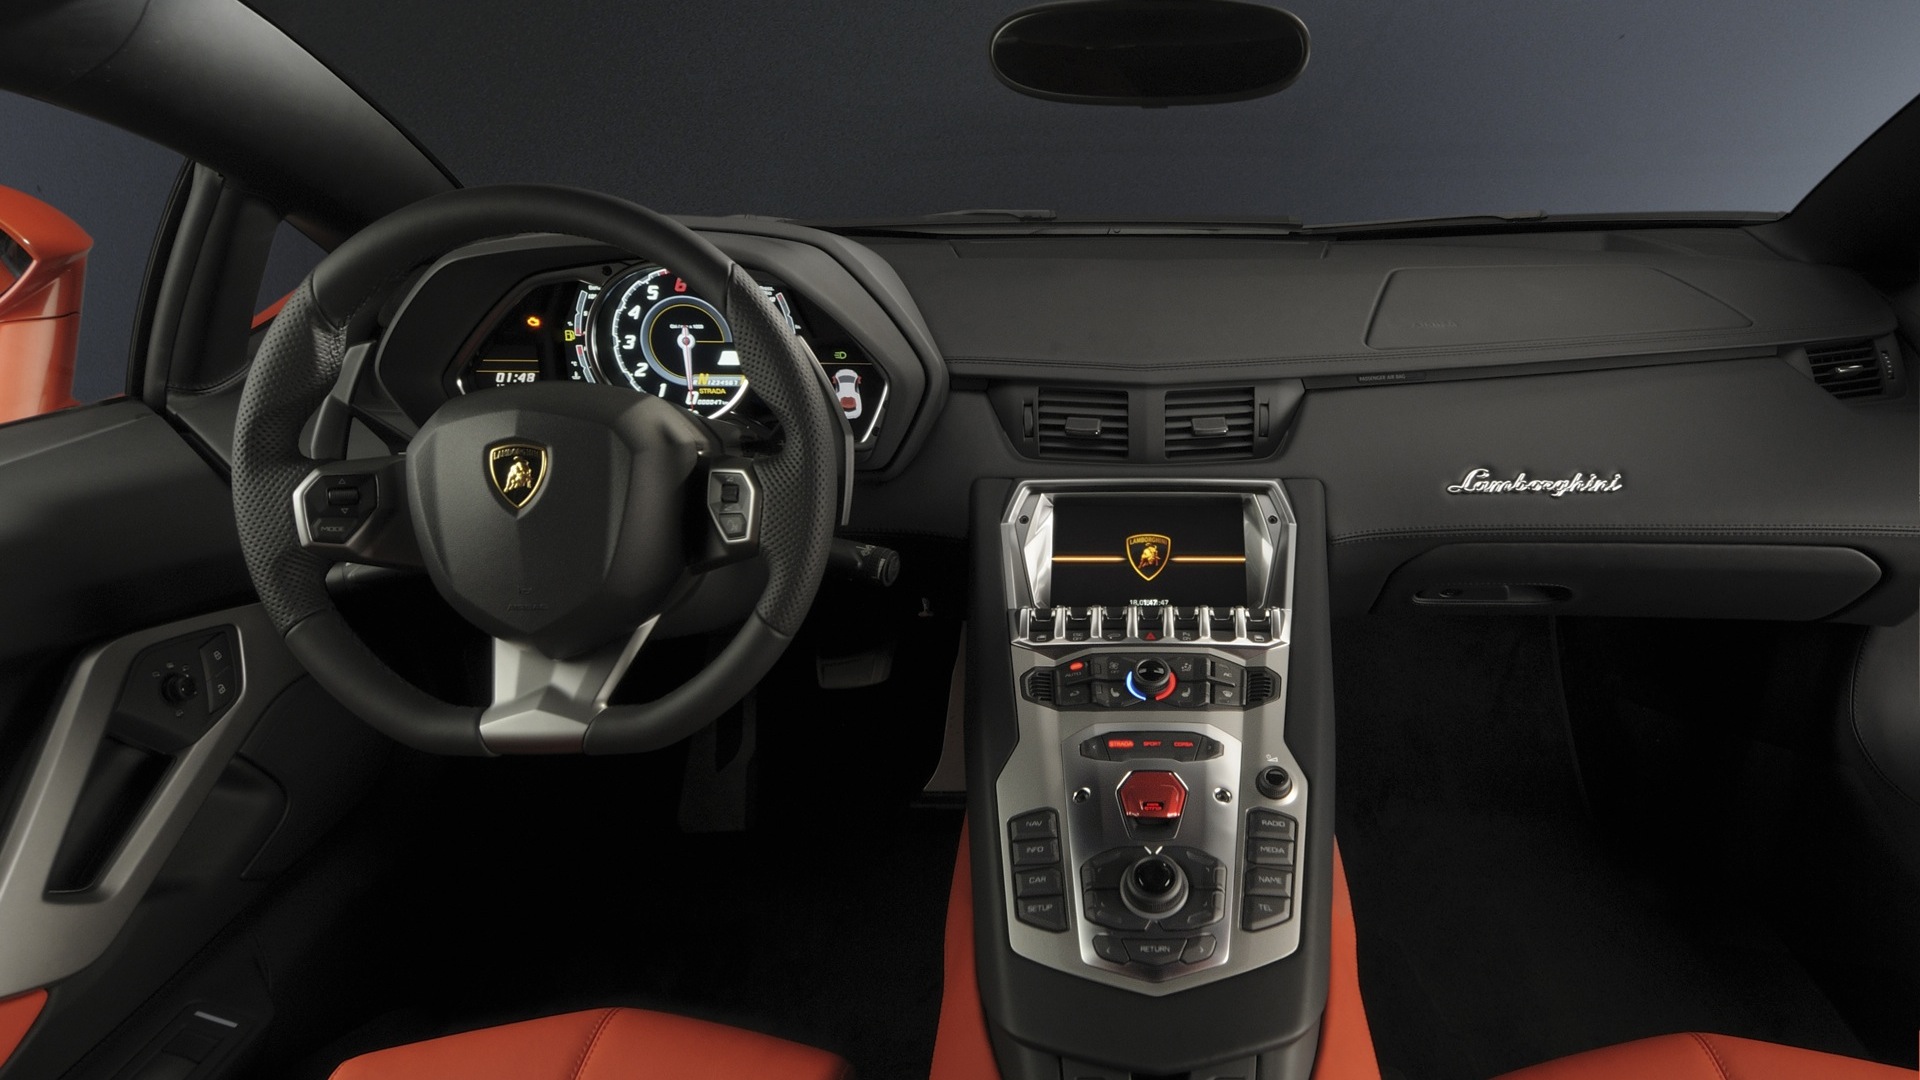 Lamborghini-Aventador-2013-LP-700-4-Compare